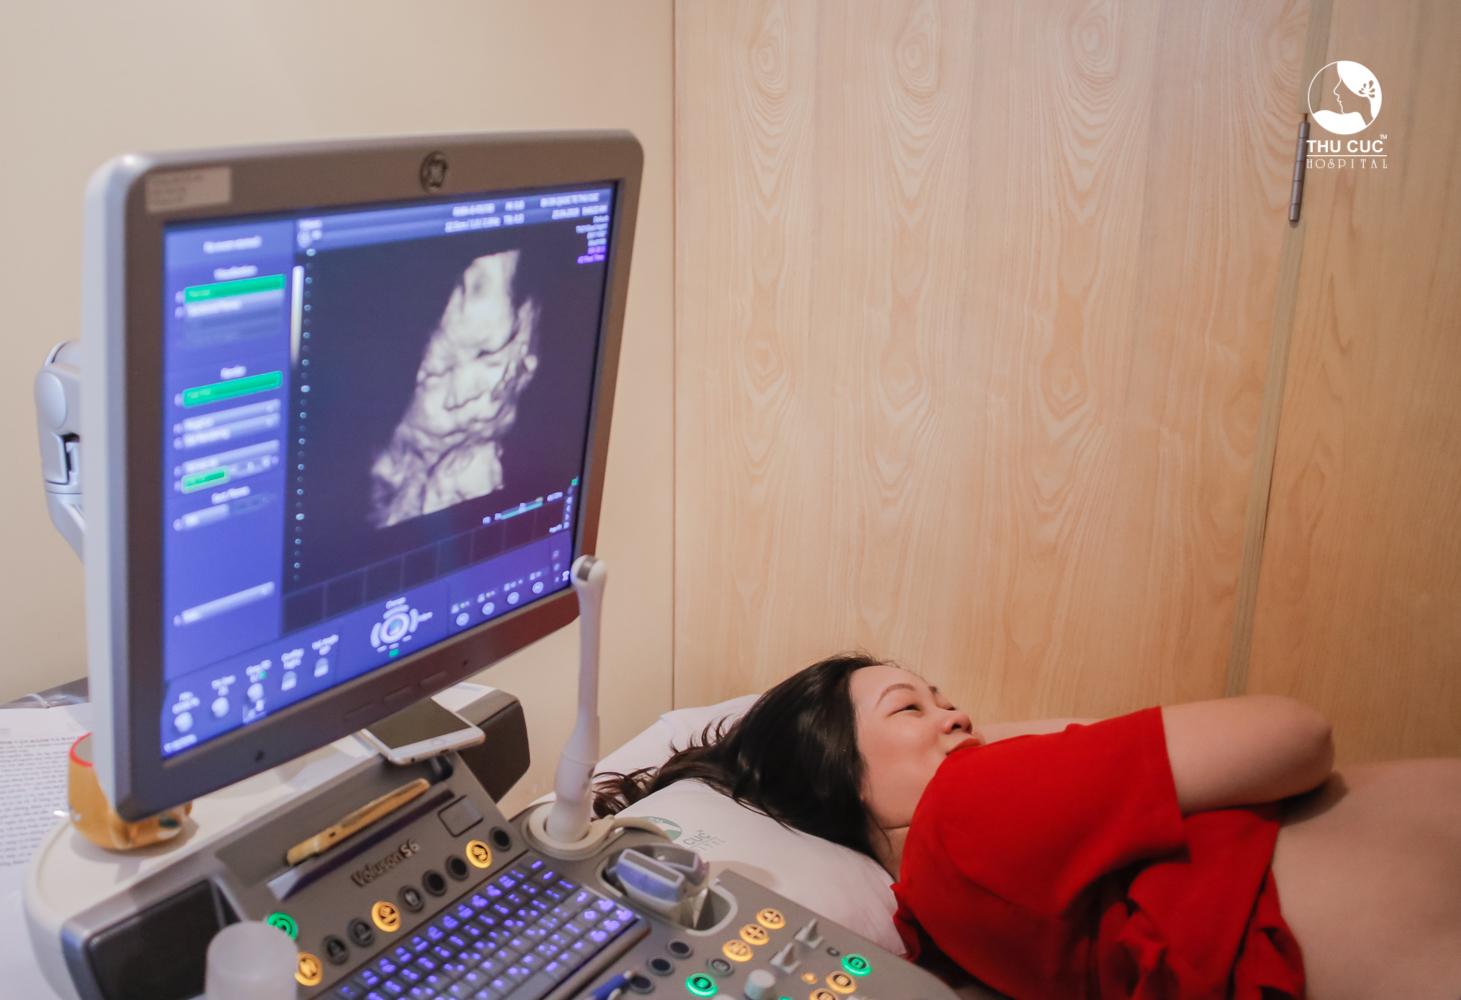 Tử cung có vách ngăn: Hình ảnh về tử cung có vách ngăn sẽ giúp người xem hiểu rõ hơn về cơ thể phụ nữ và vai trò của tử cung trong quá trình mang thai. Đồng thời, những thông tin về việc giảm thiểu các tác động tiêu cực đến sức khỏe của tử cung cũng sẽ được chia sẻ chi tiết và rõ ràng.